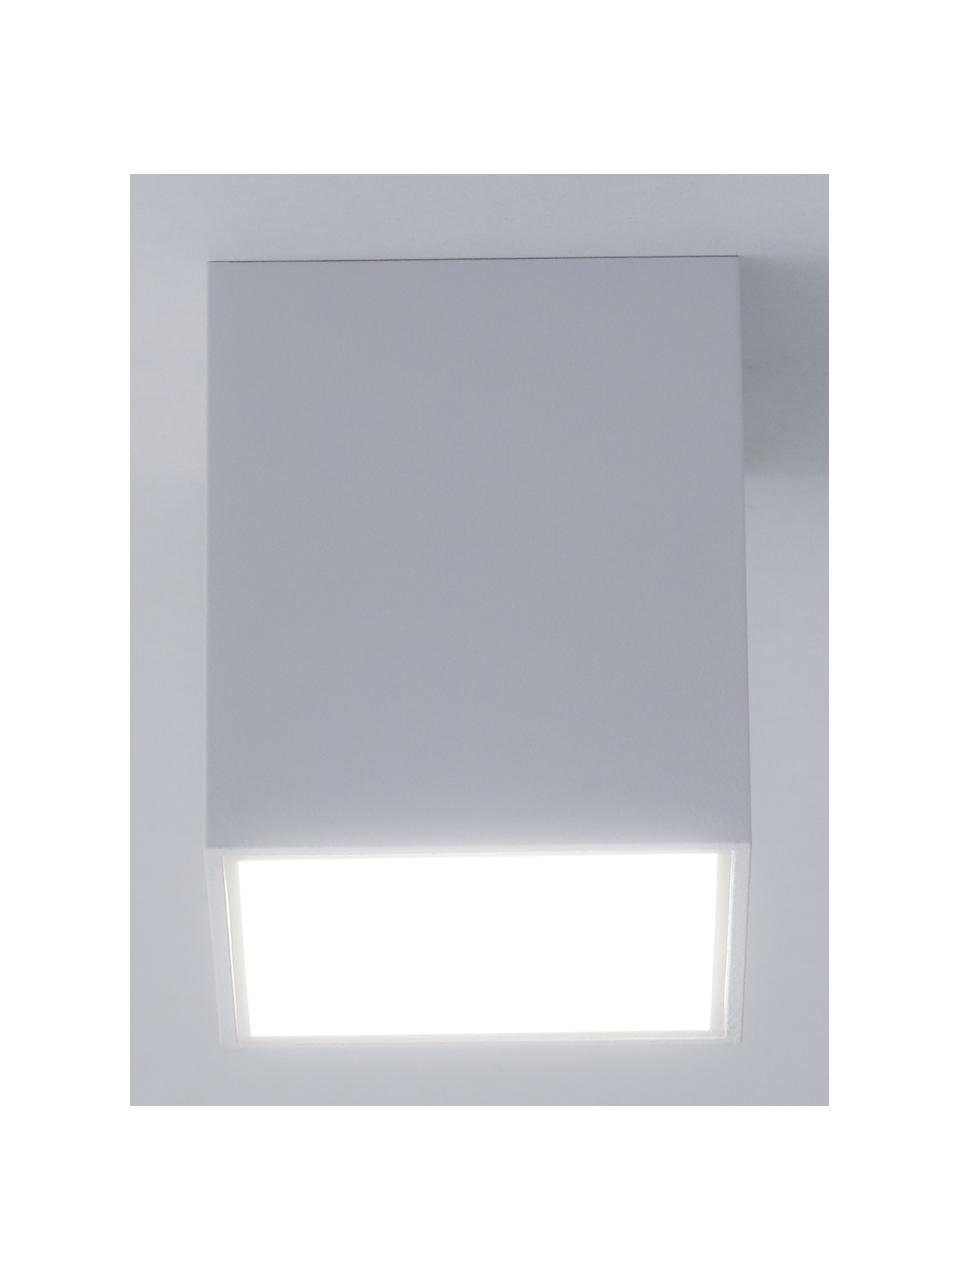 Spot sufitowy LED Marty, Biały, S 10 x W 12 cm